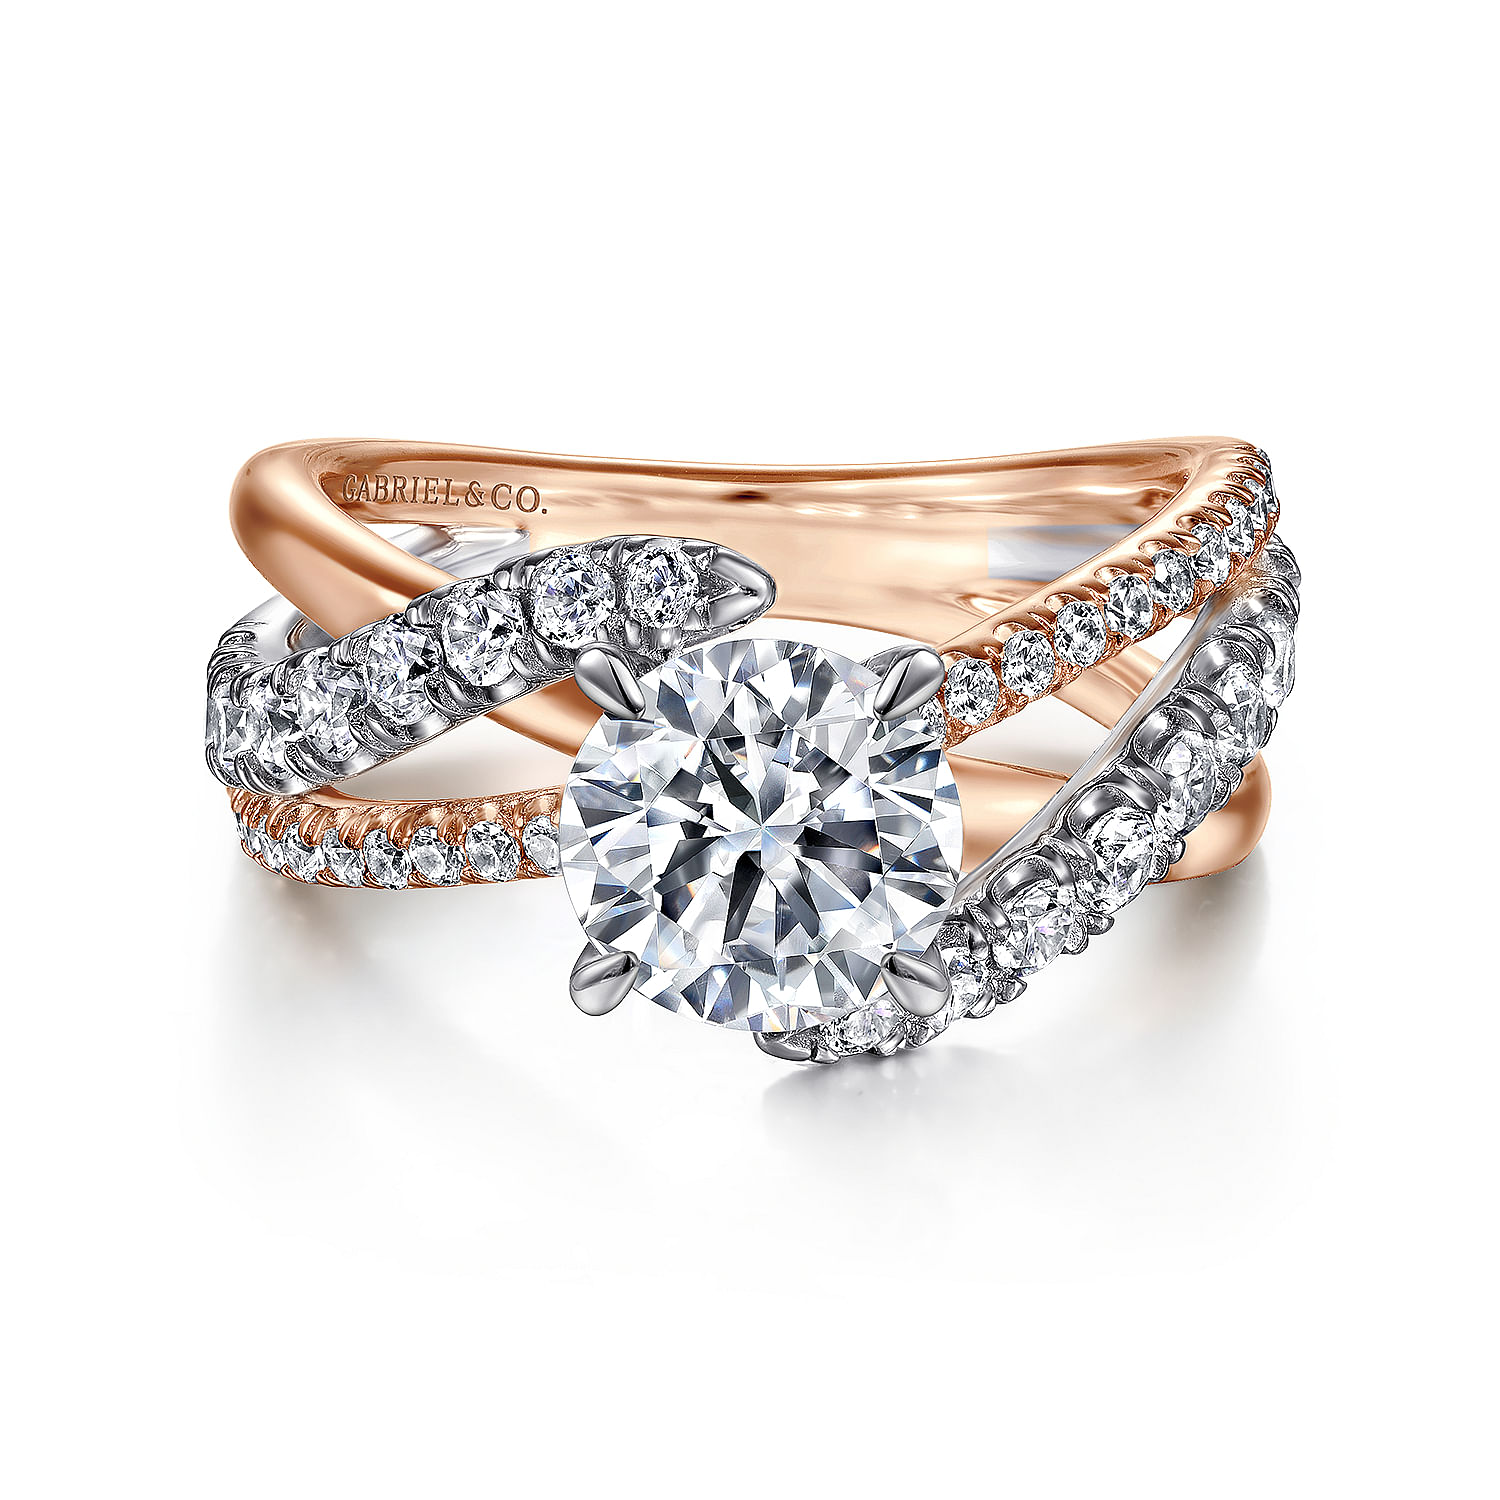 Zaira - 14k White & Rose Gold 1.5 Carat Round Free Form Natural Diamond Engagement  Ring @ $4400